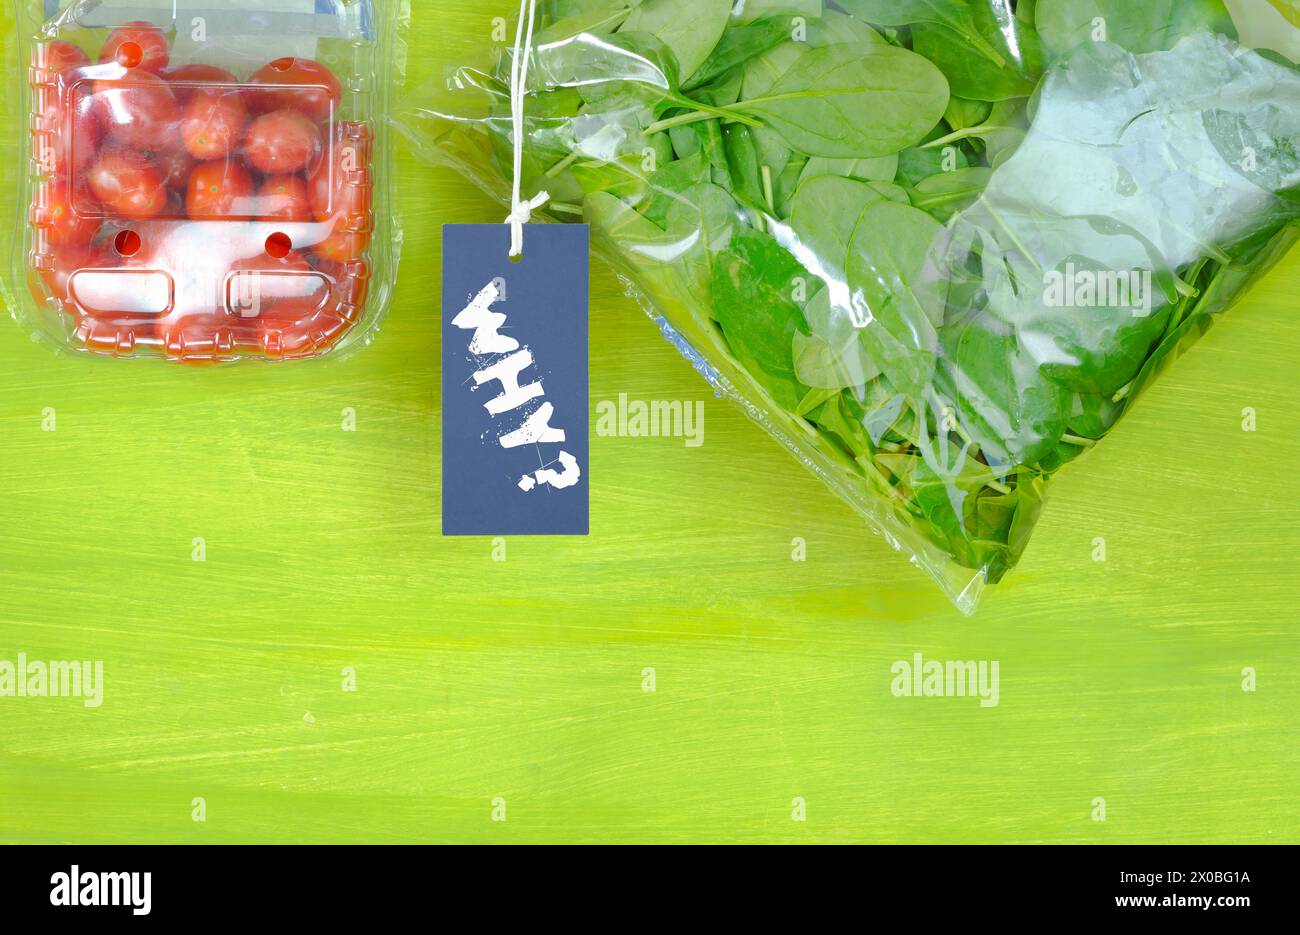 Plastikverpacktes Essen, Spinat und Tomaten in Plastiktüten, Schild mit Unterschrift Warum? Umweltschutz, Vermeidung von Kunststoffverpackungen Stockfoto